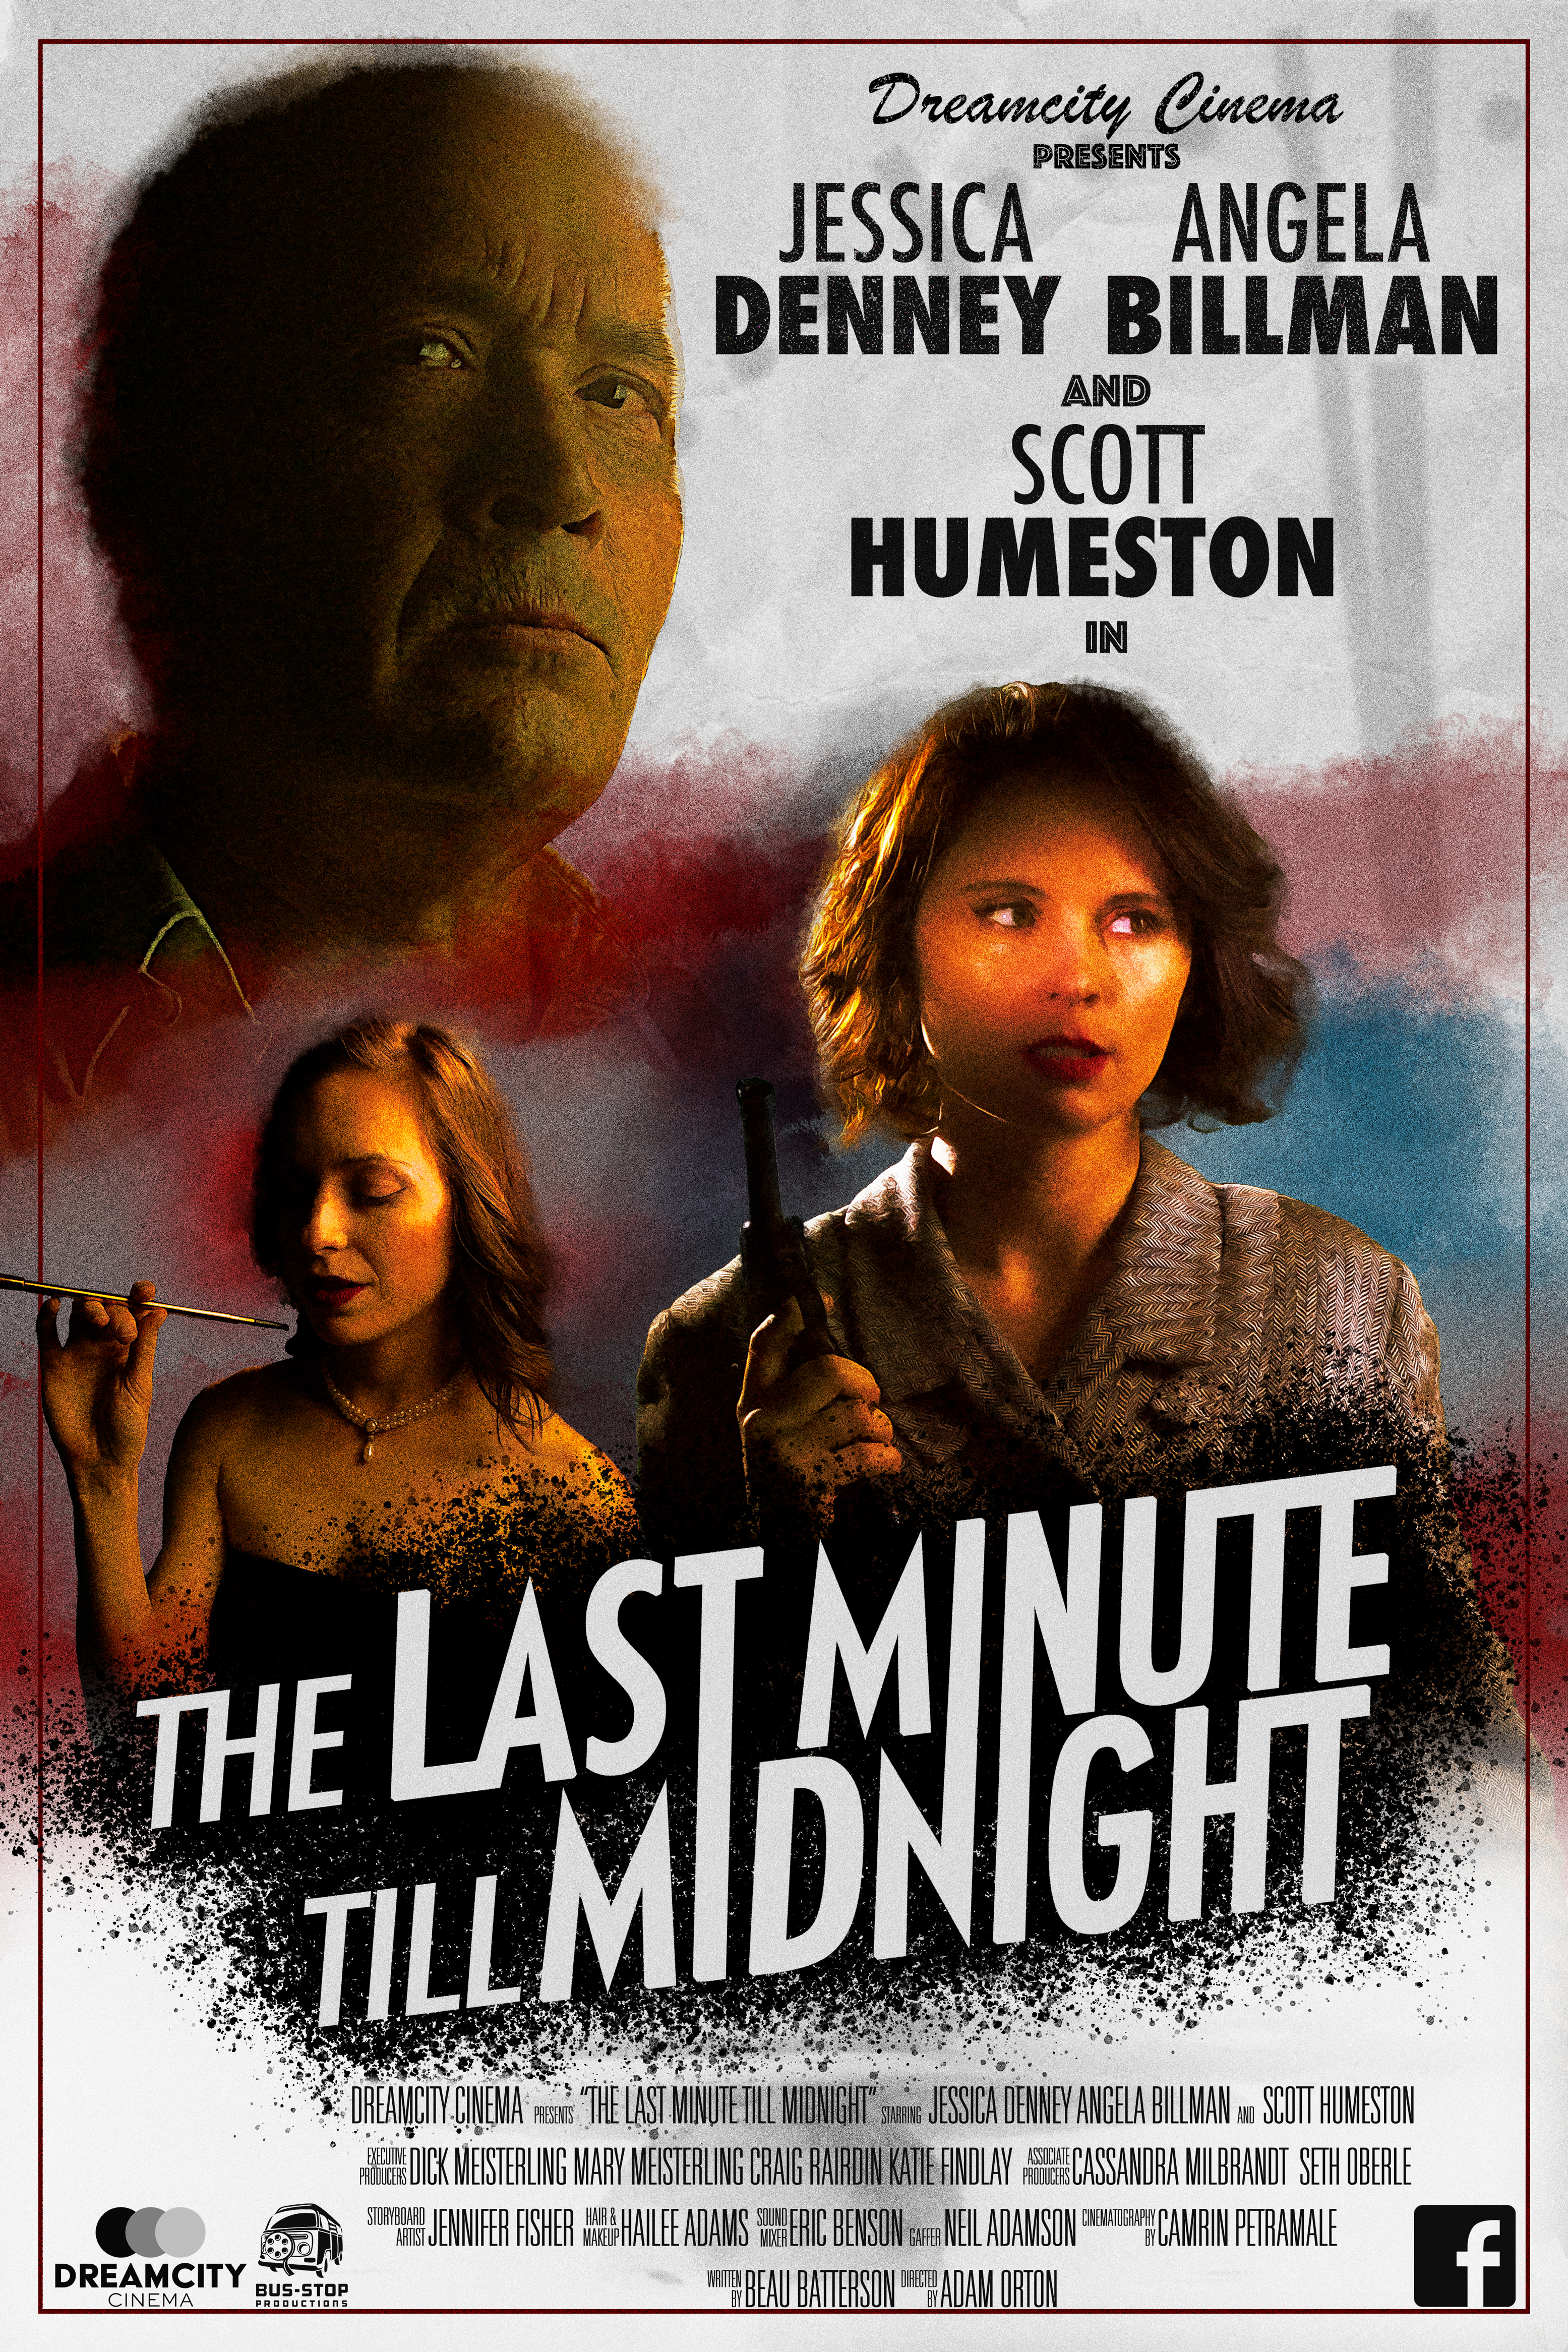 The Last Minute Till Midnight (2020)